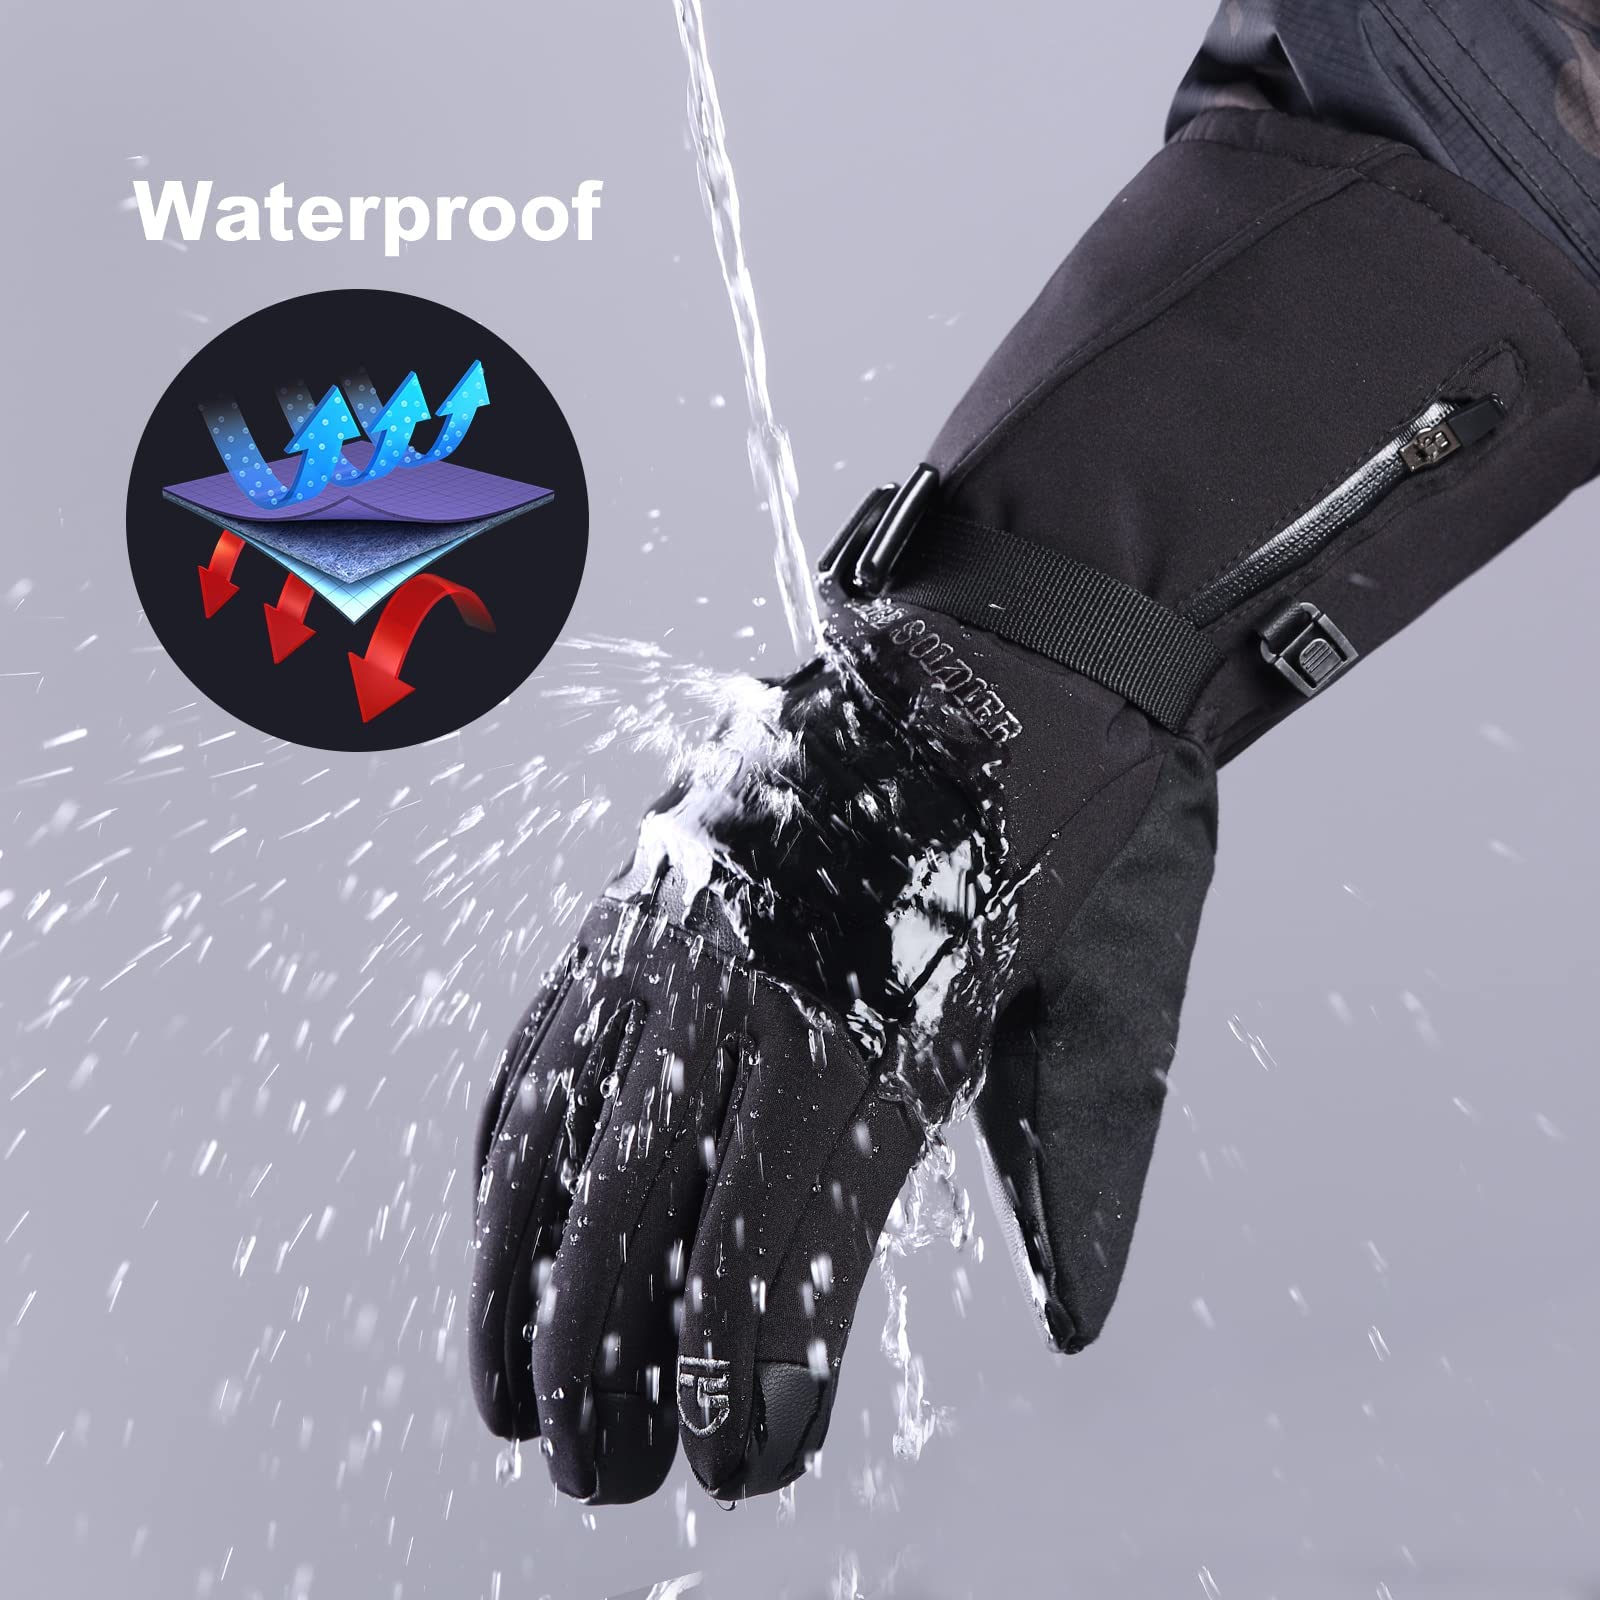 waterproof guantes nieve ski water proof